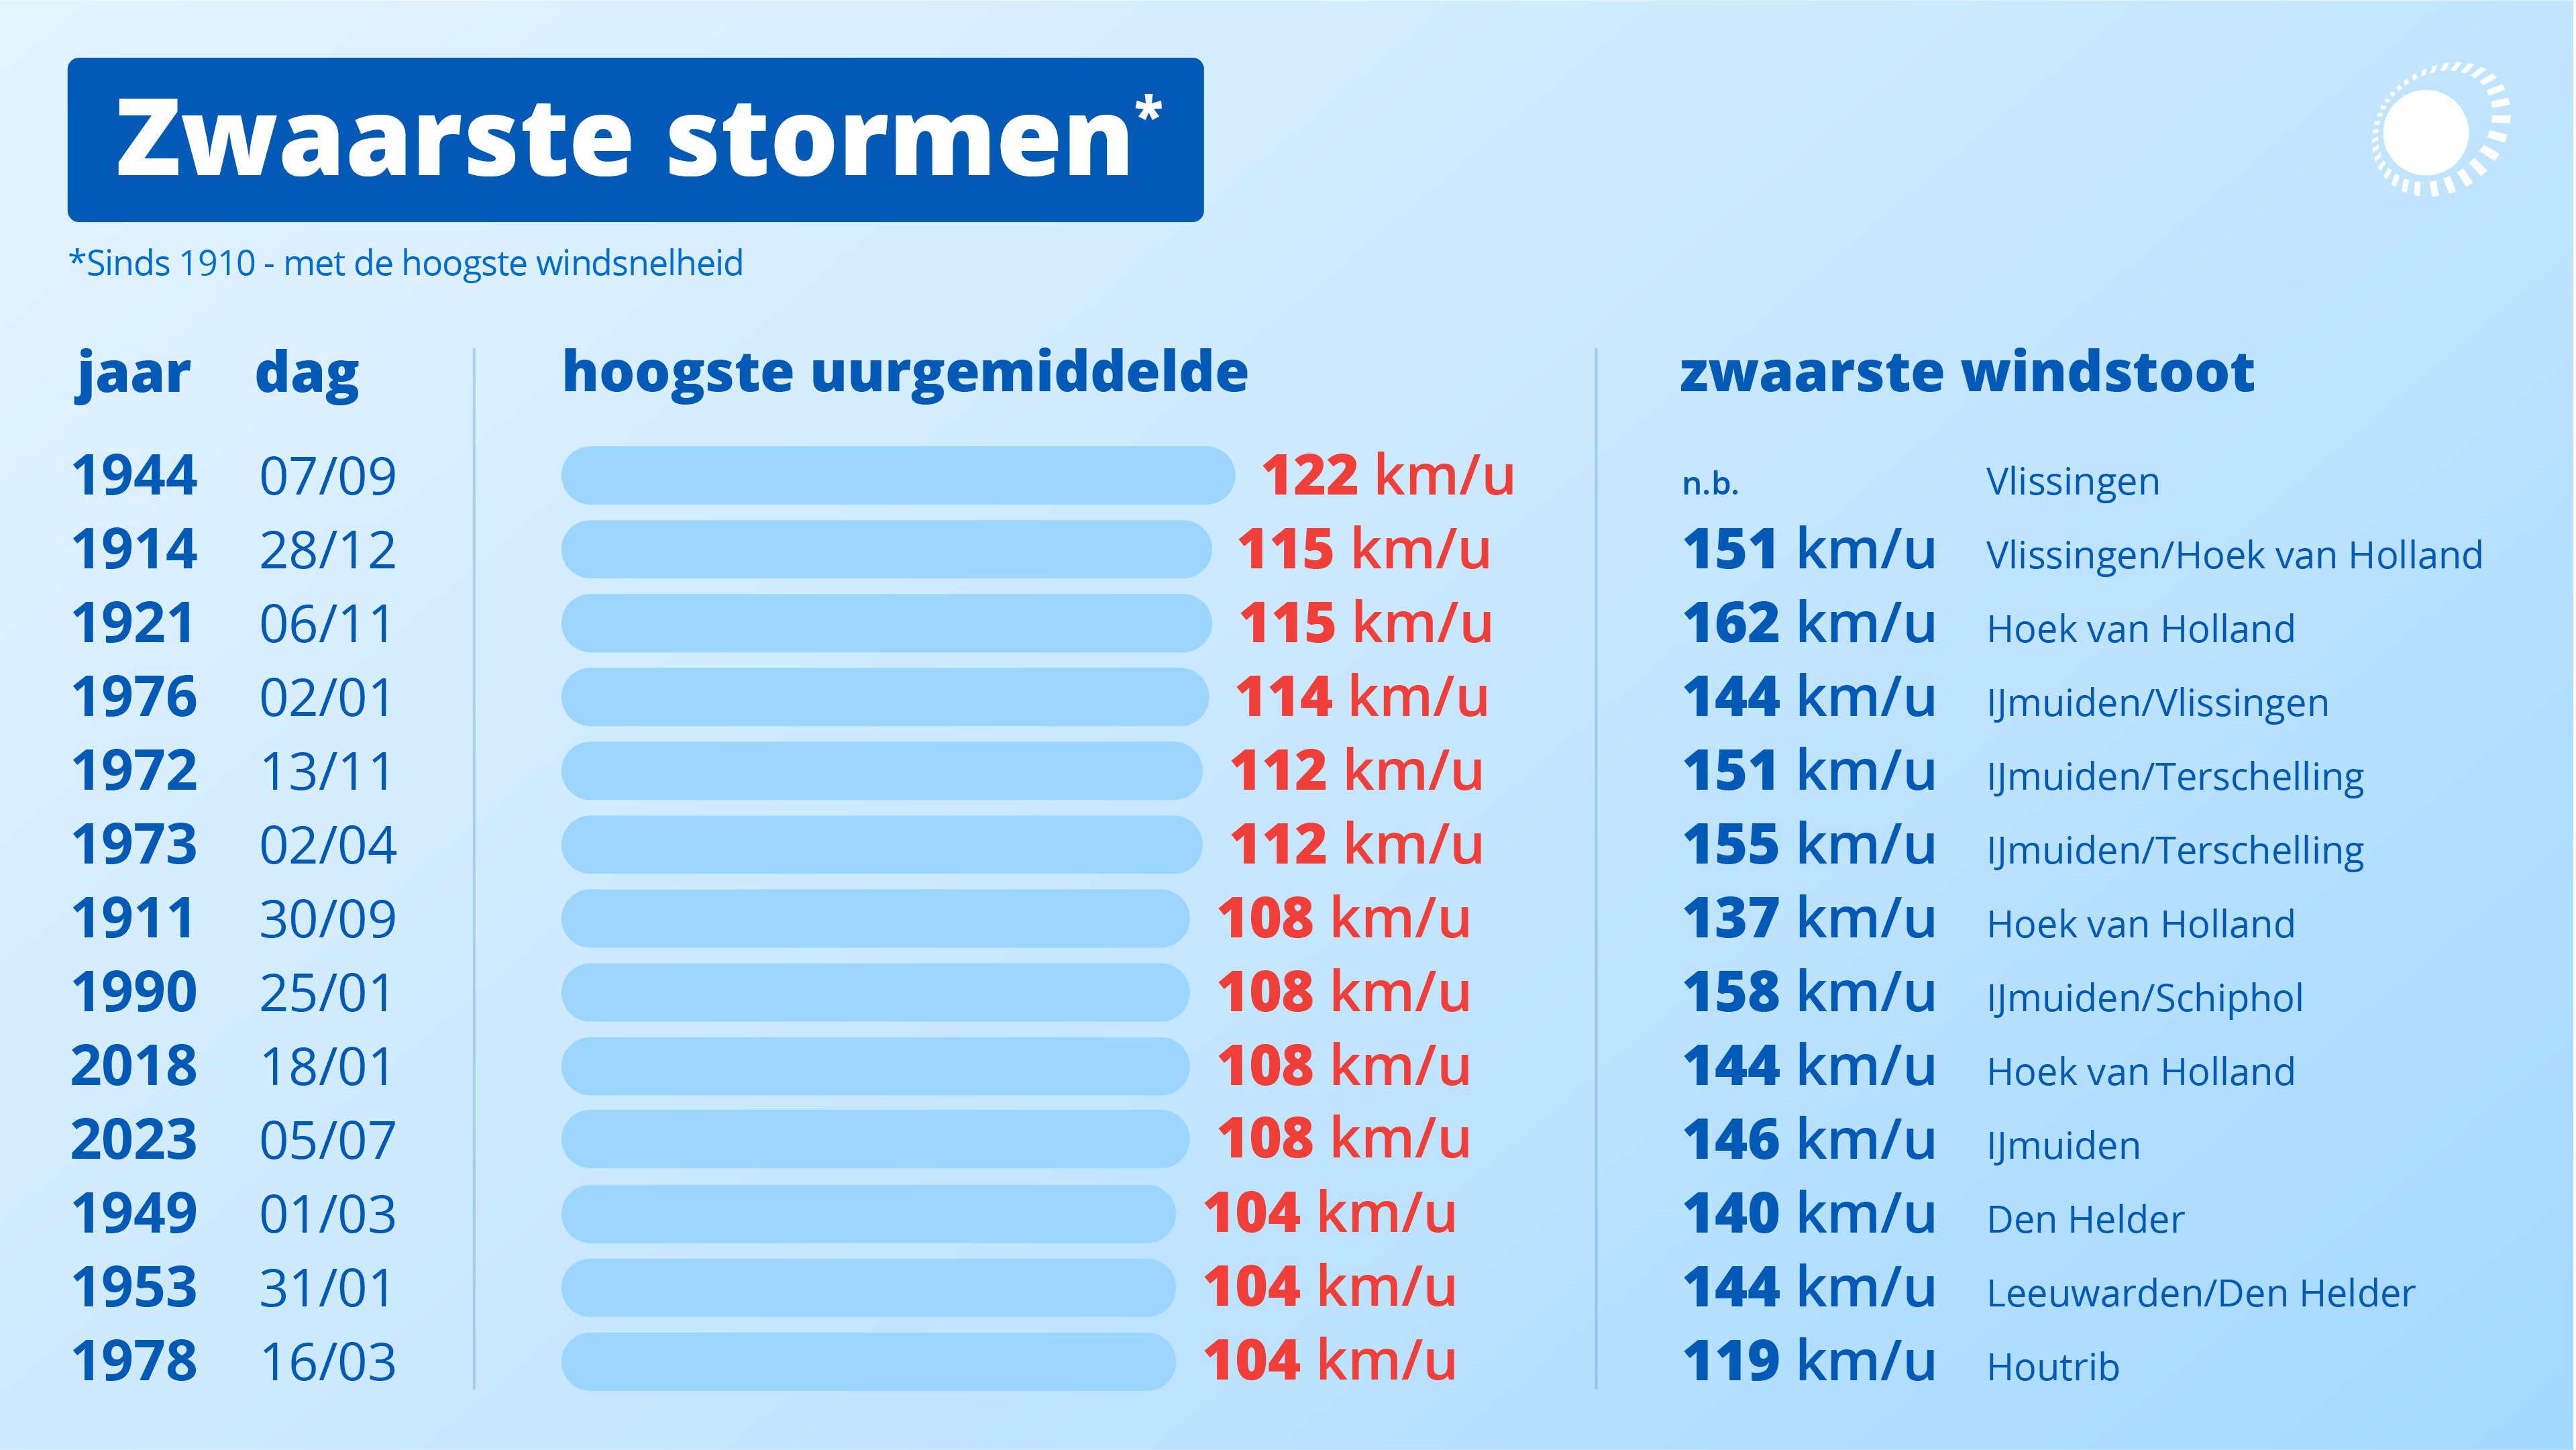 Dit zijn de zwaarste stormen uit de Nederlandse geschiedenis. Bron: Weeronline.